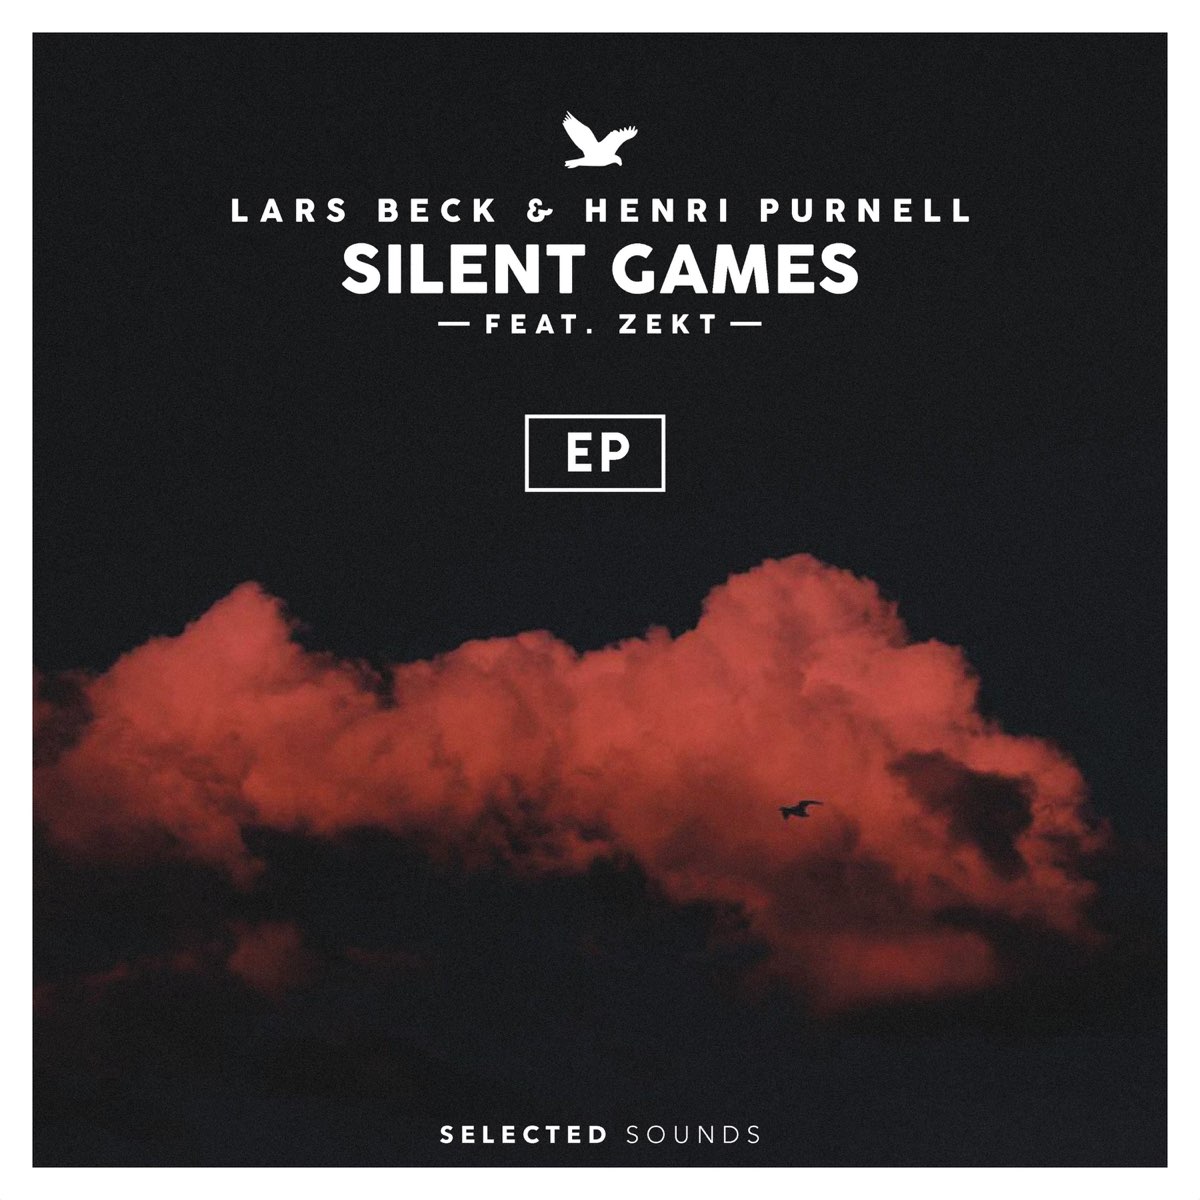 Игры тихая музыка. Zekt. Lars Beck & Henri Purnell - Silent games (UOAK Remix). Revelries Henri Purnell - feel it still.